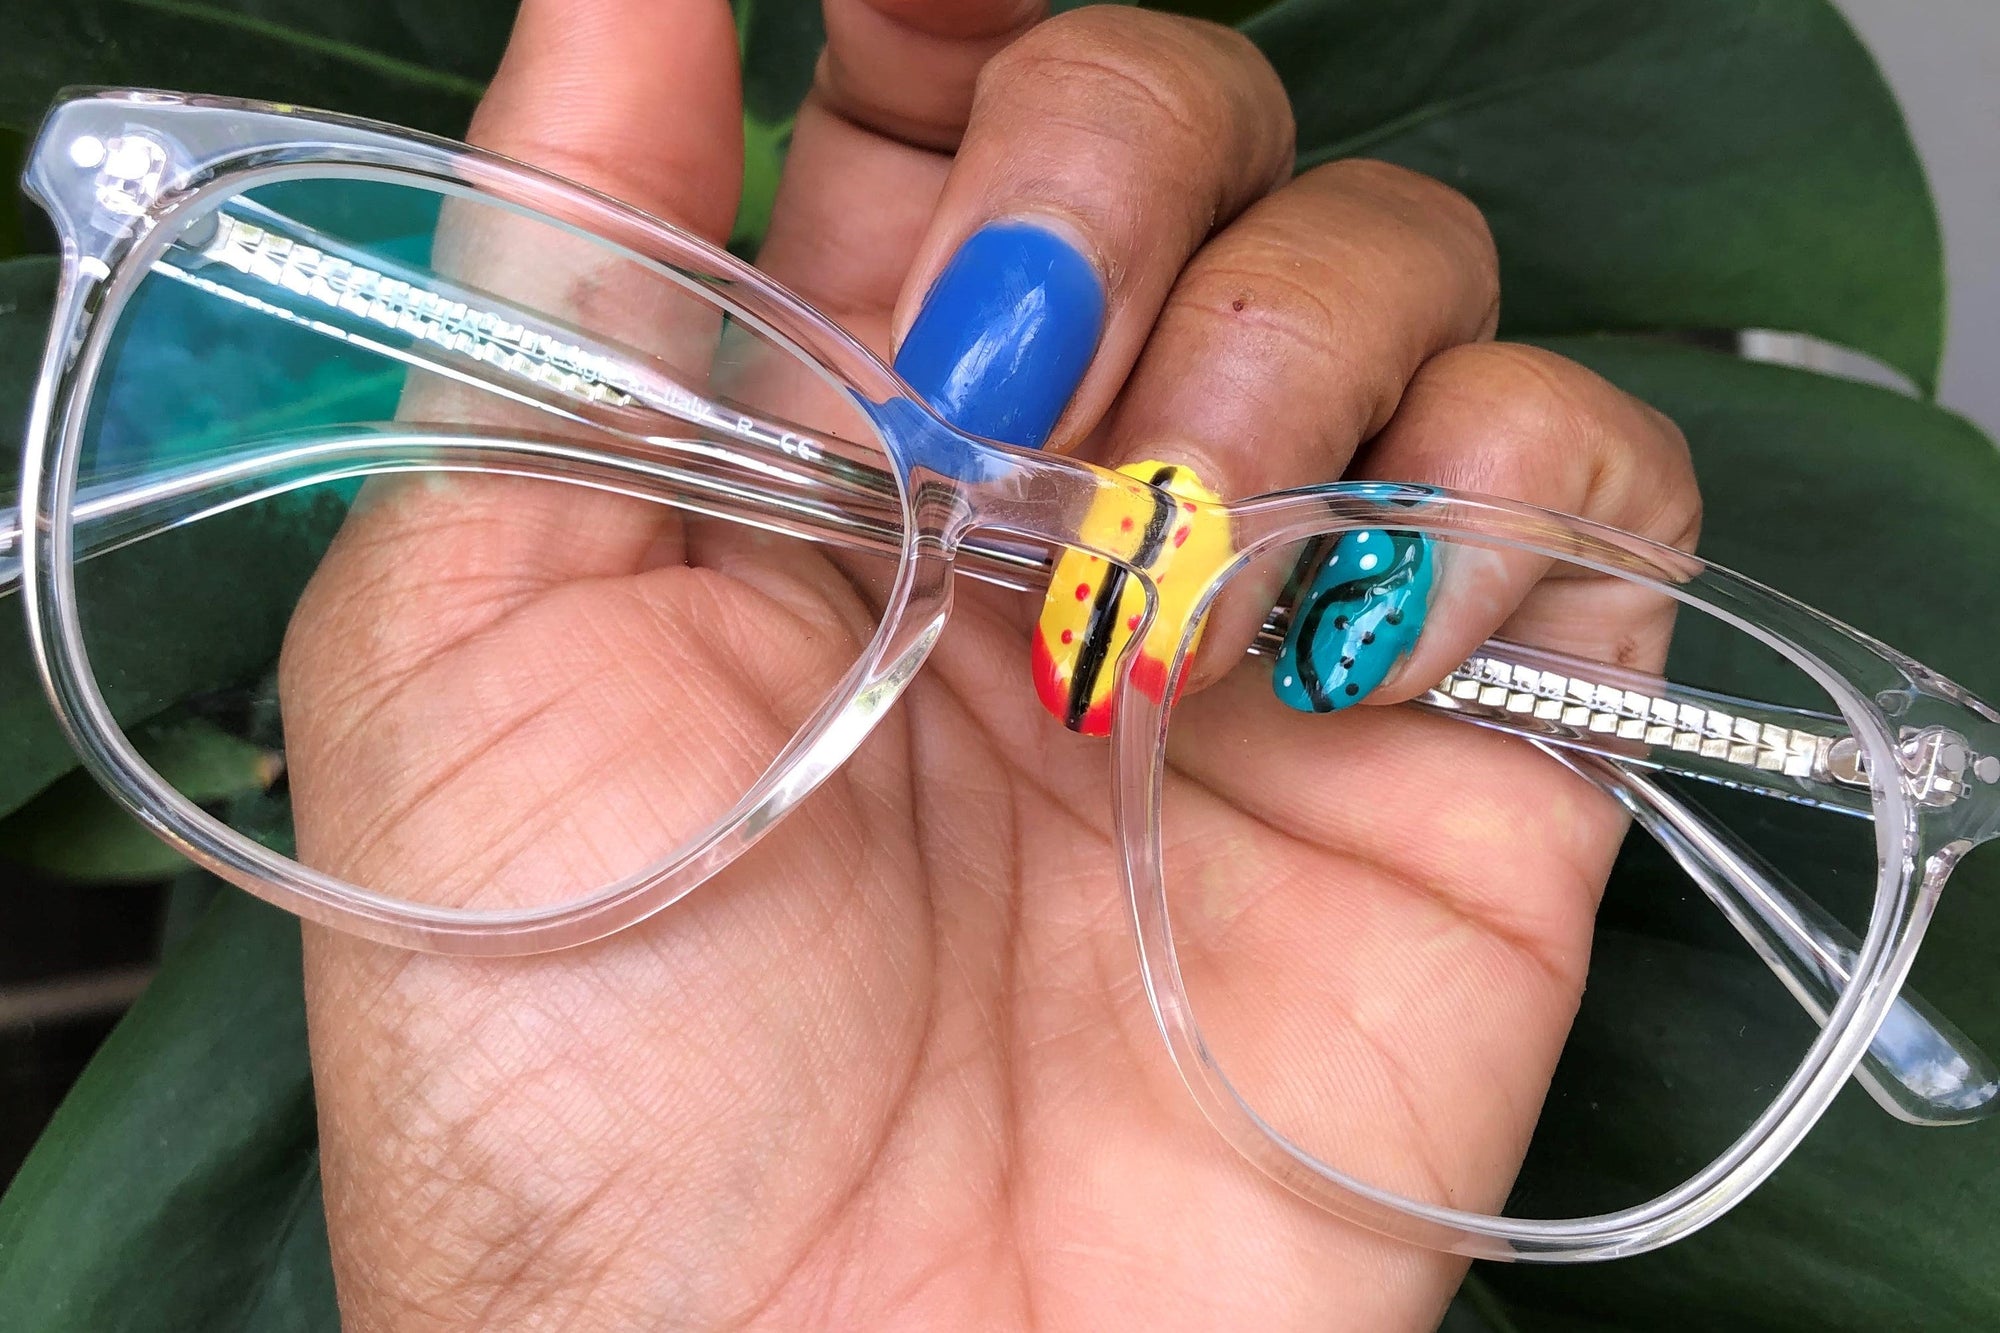 How Can I Tell If My Glasses Are Blue Block? | KOALAEYE OPTICAL